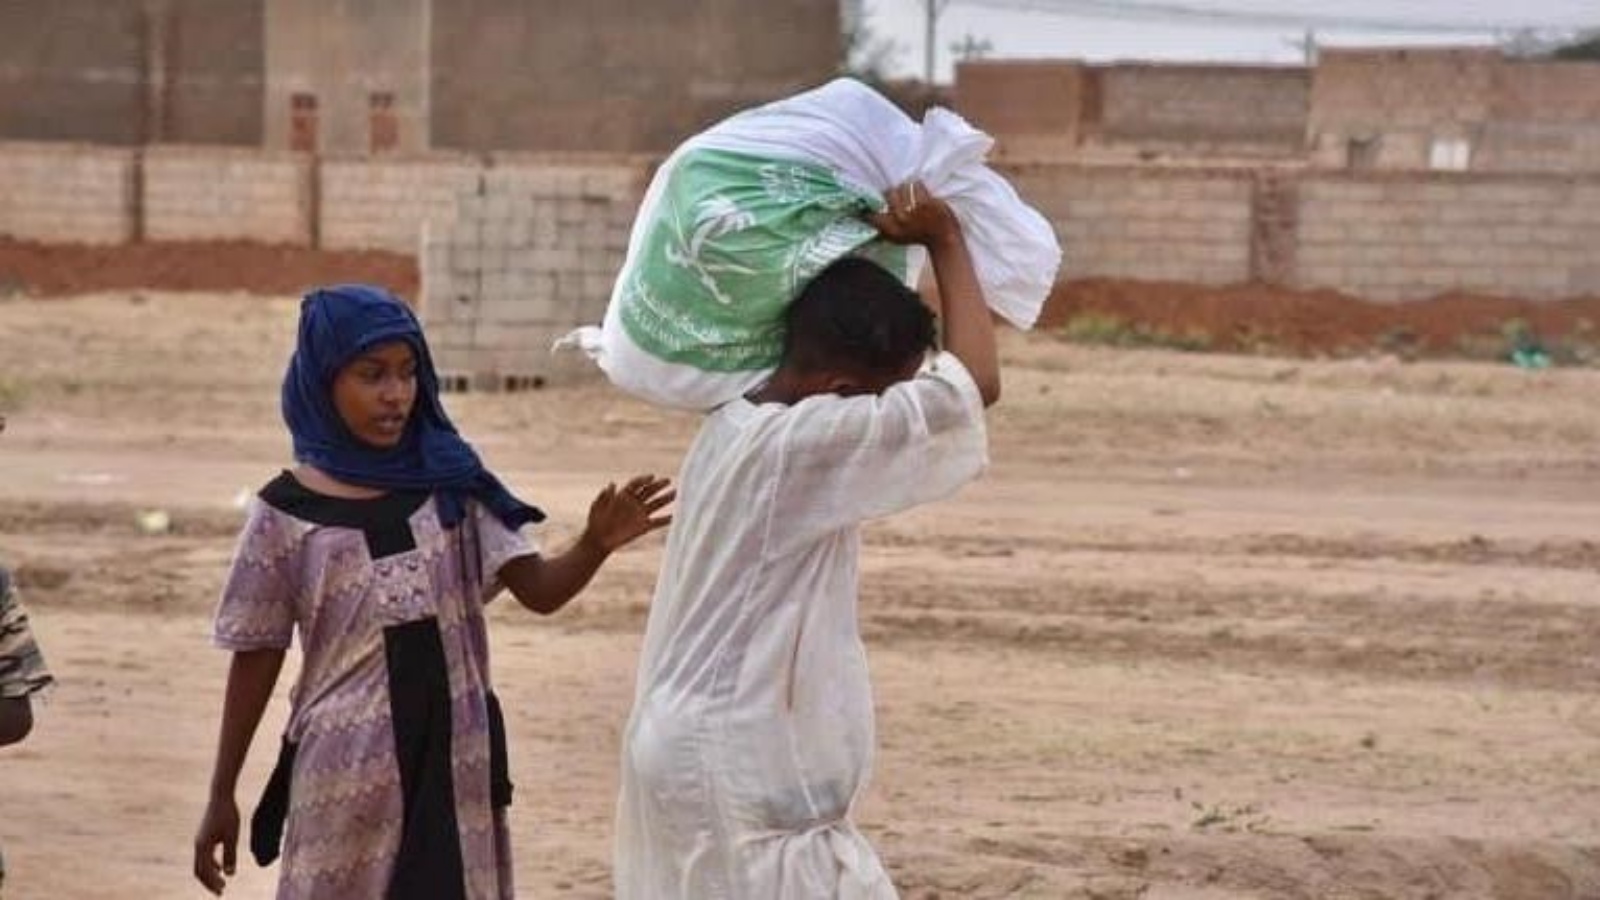 ناشد السودان المجتمع الدولي منتصف سبتمبر لتقديم مزيد من المساعدات دعما لها لمواجهة هذه الأزمة